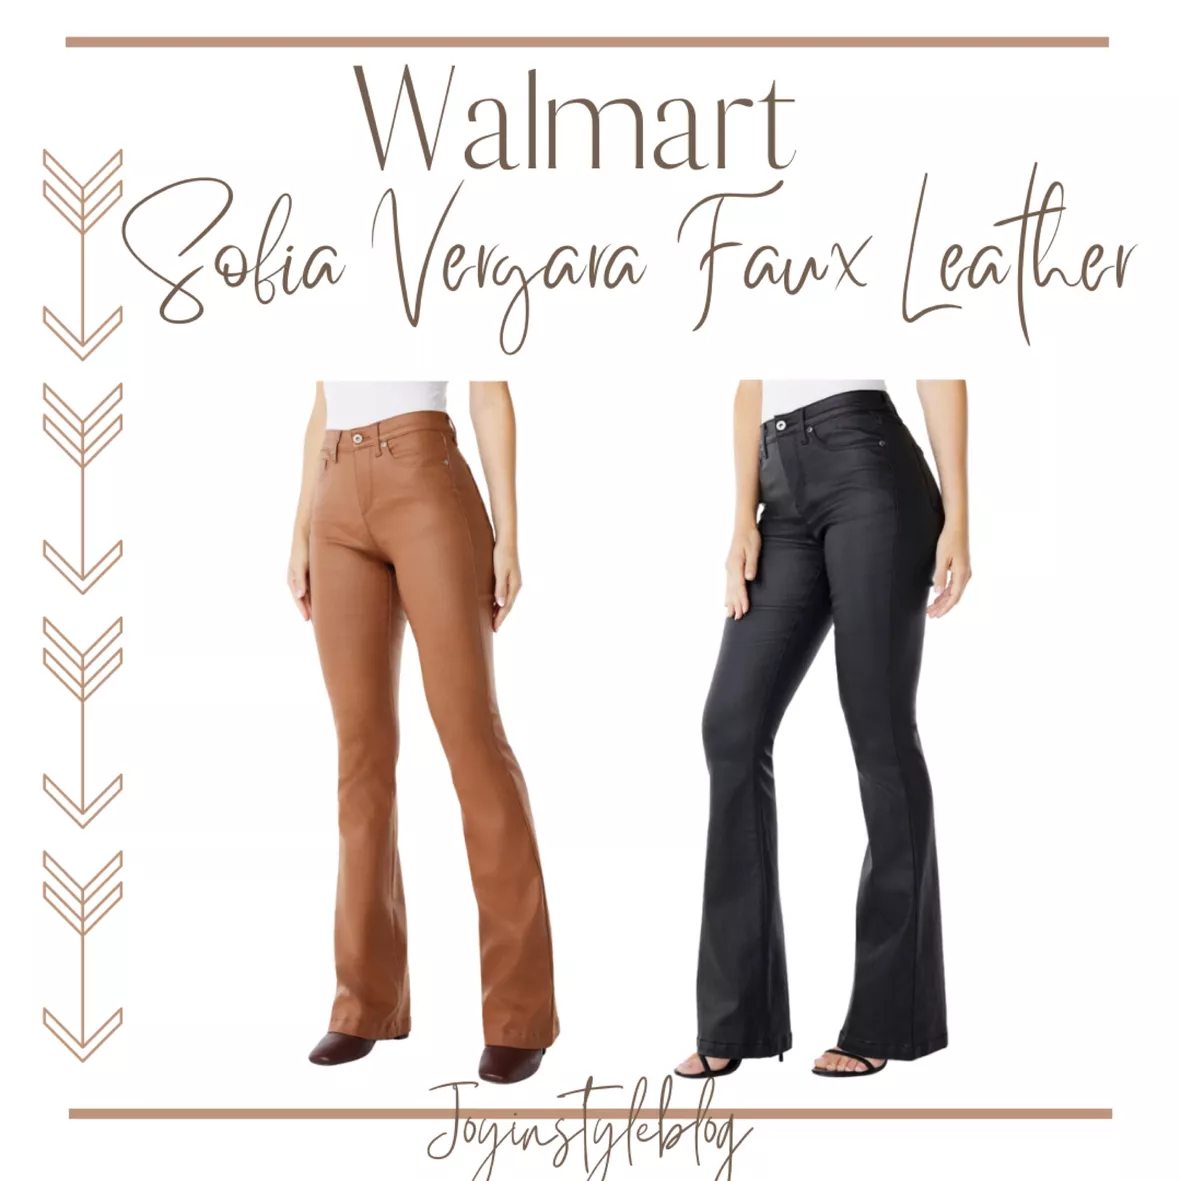 Sofia Jeans by Sofia Vergara Women's Melisa High Waist Flare Jeans - Walmart.com